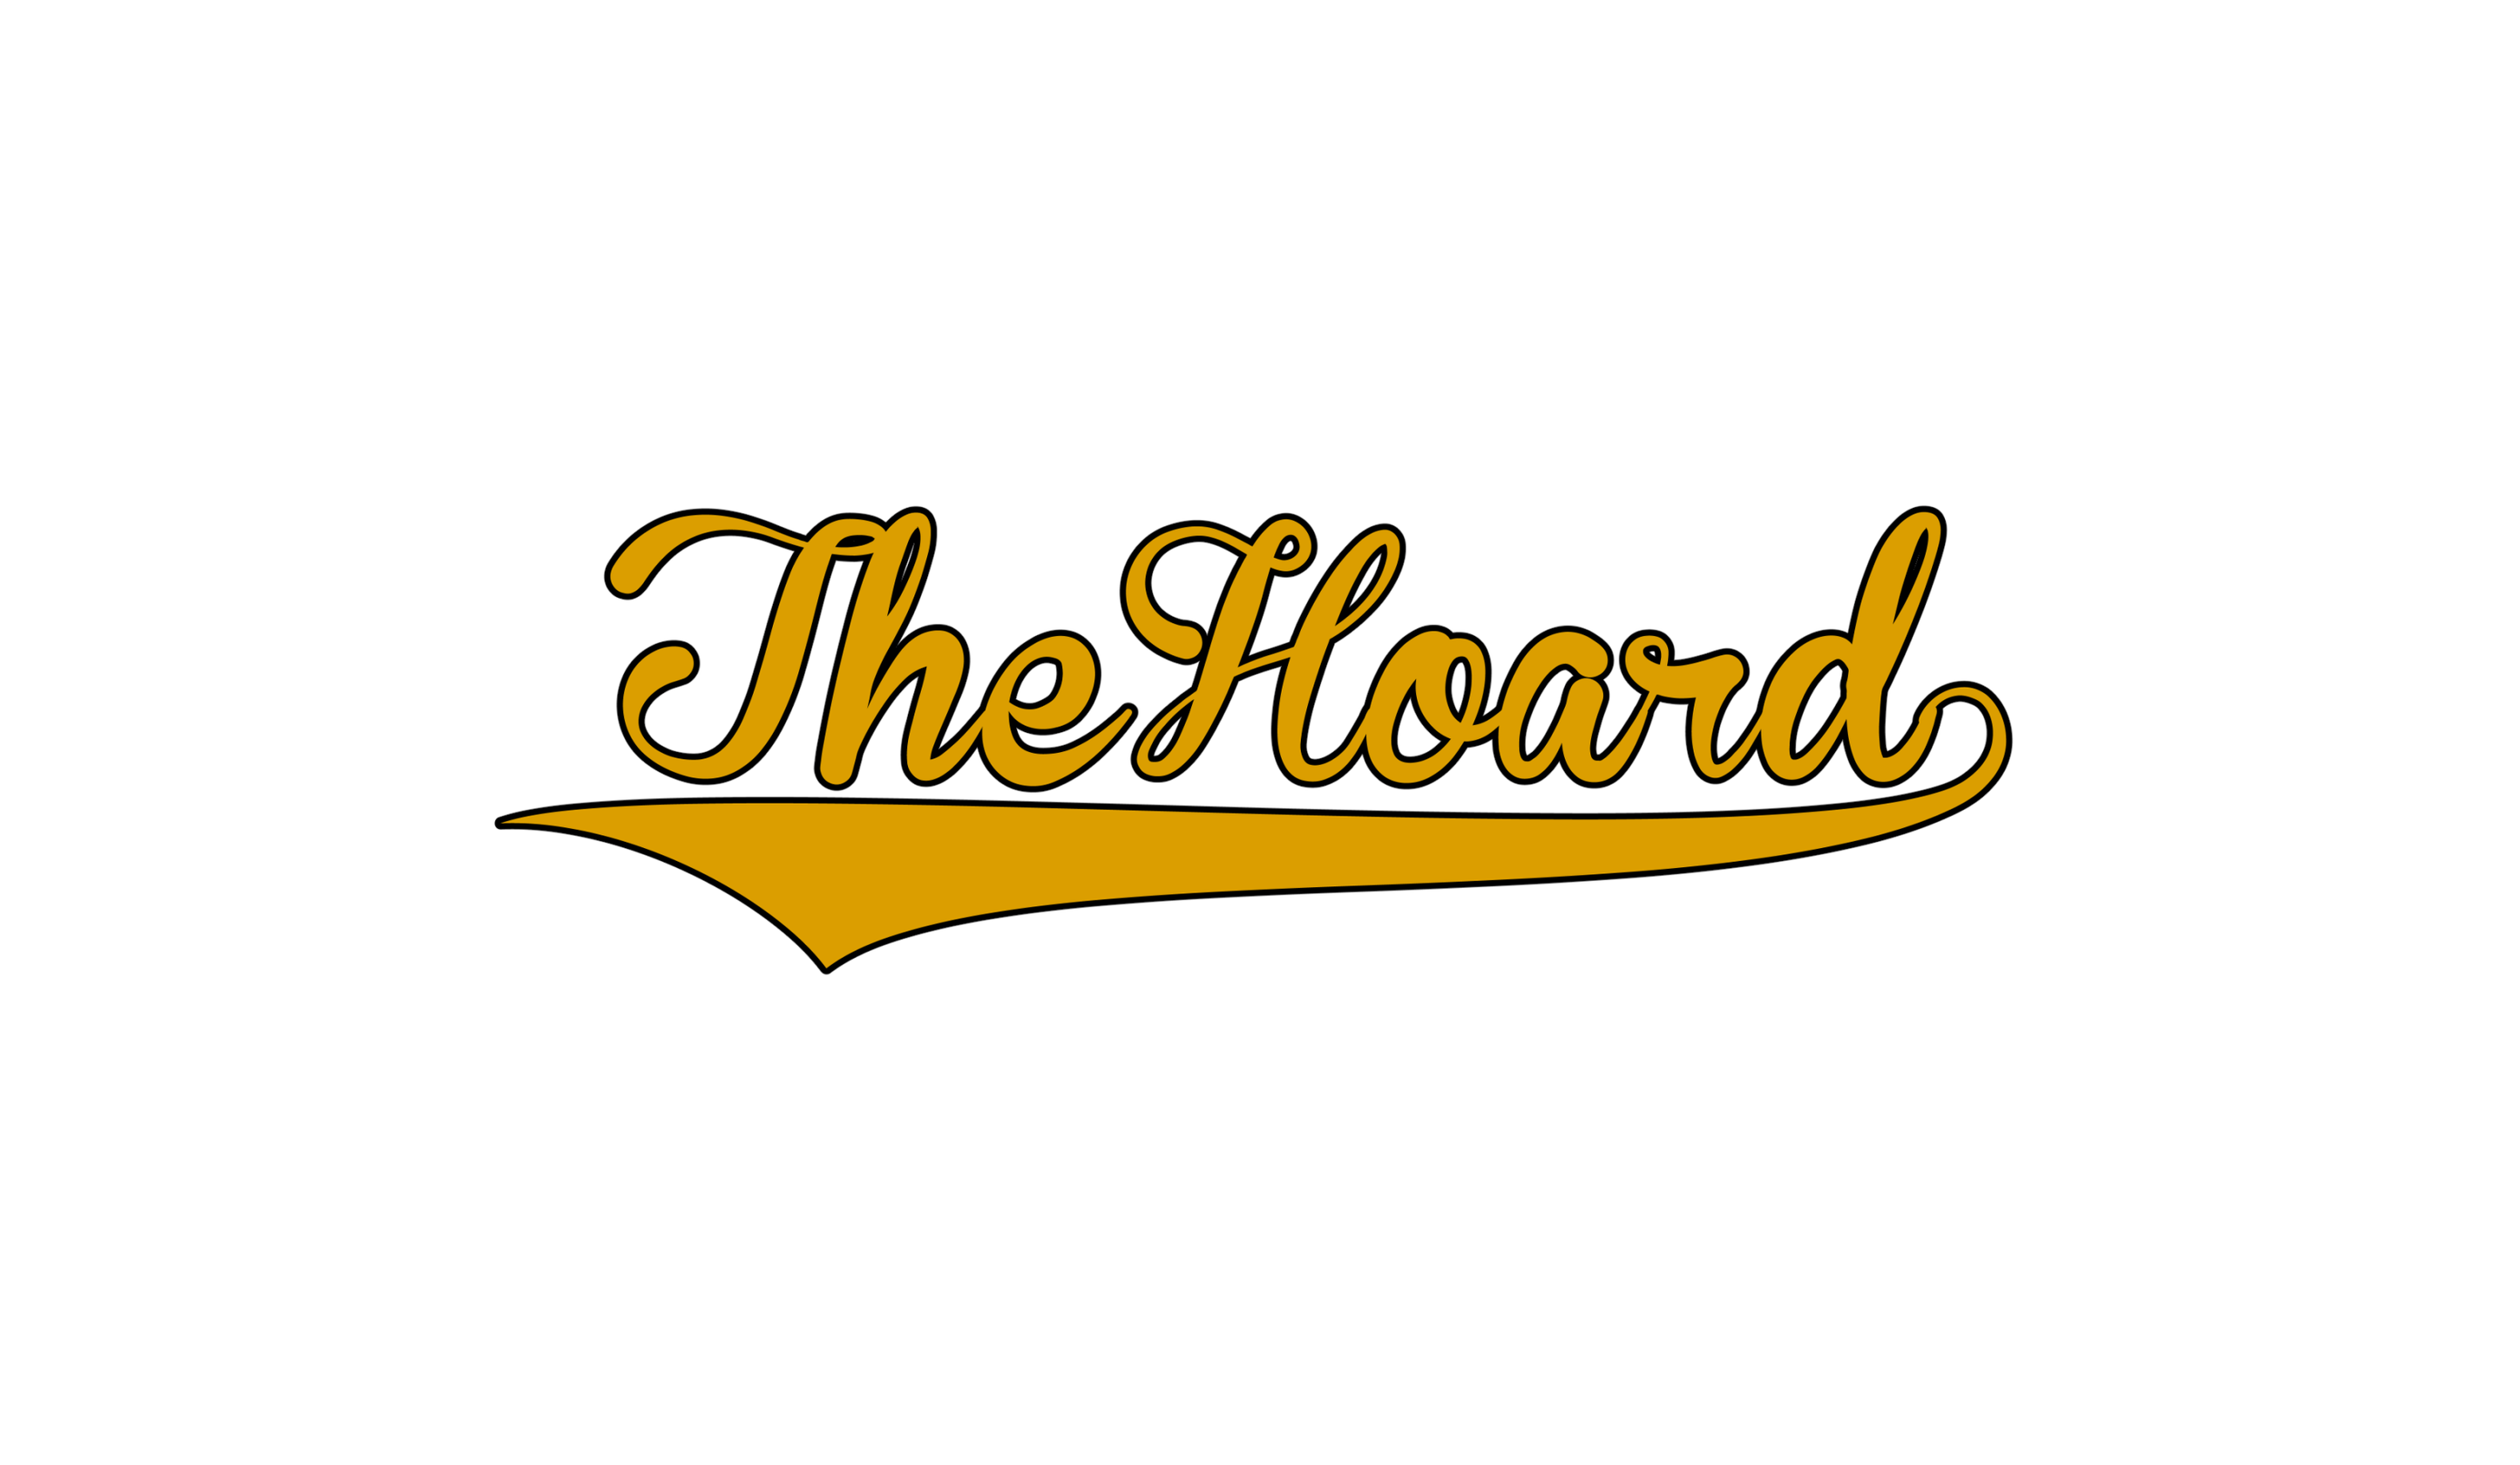 The HOard LLC